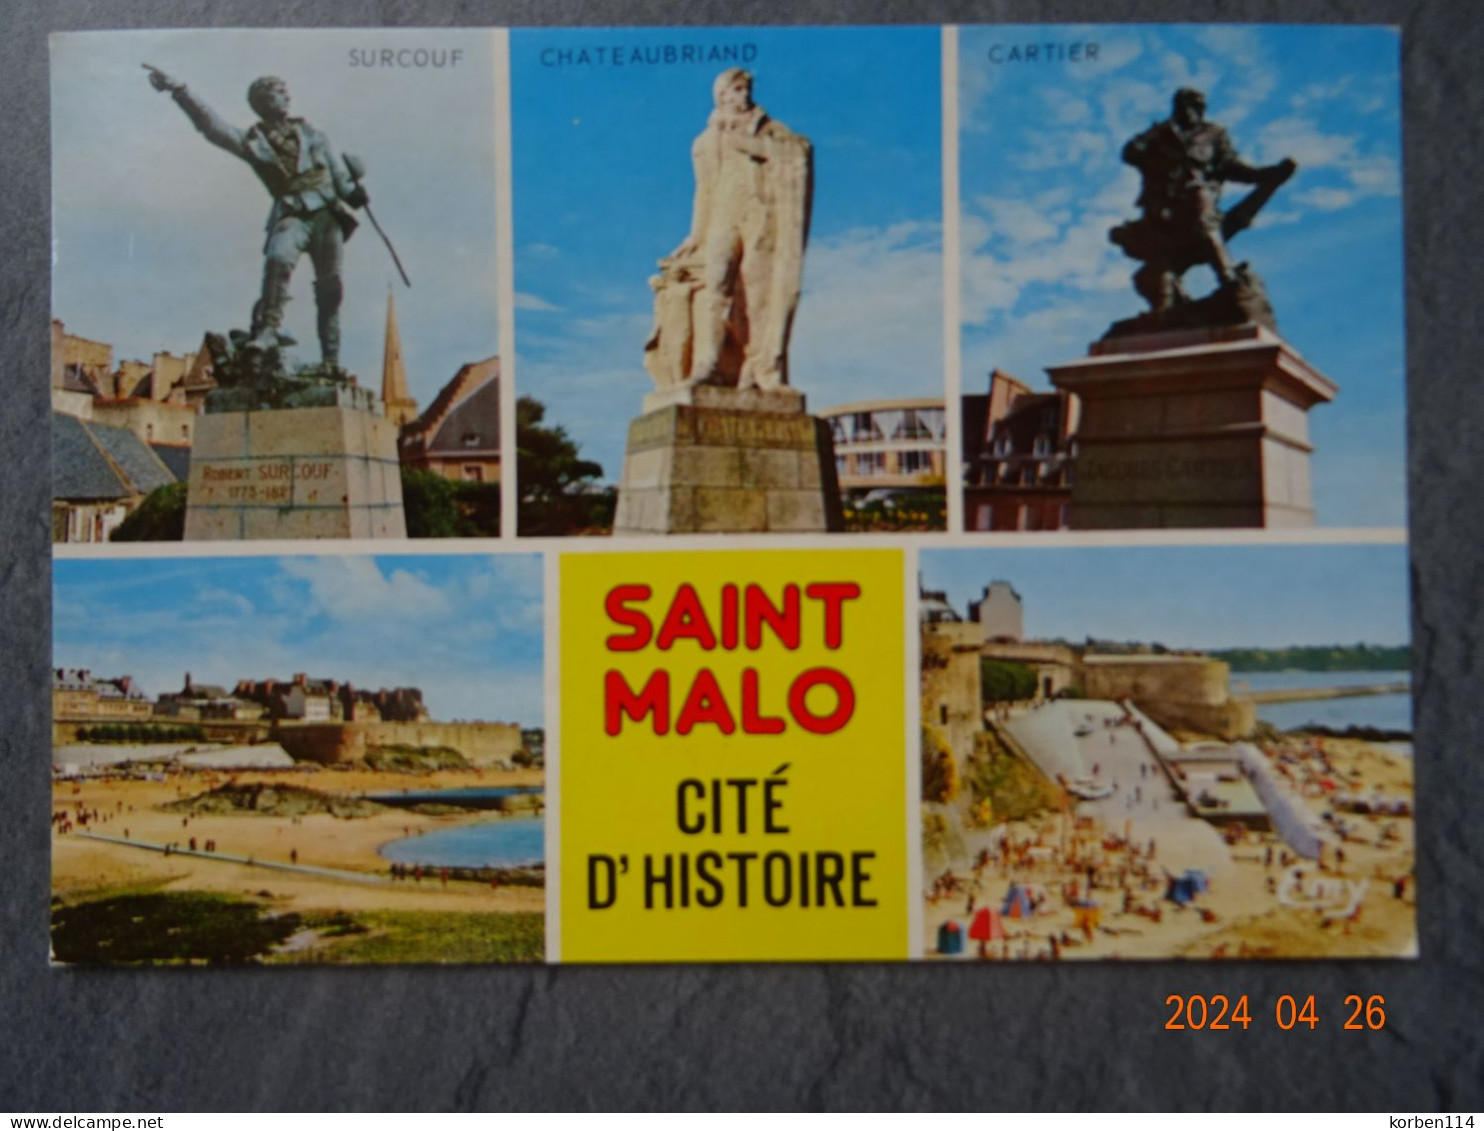 STATUES DE SURCOUF - Saint Malo